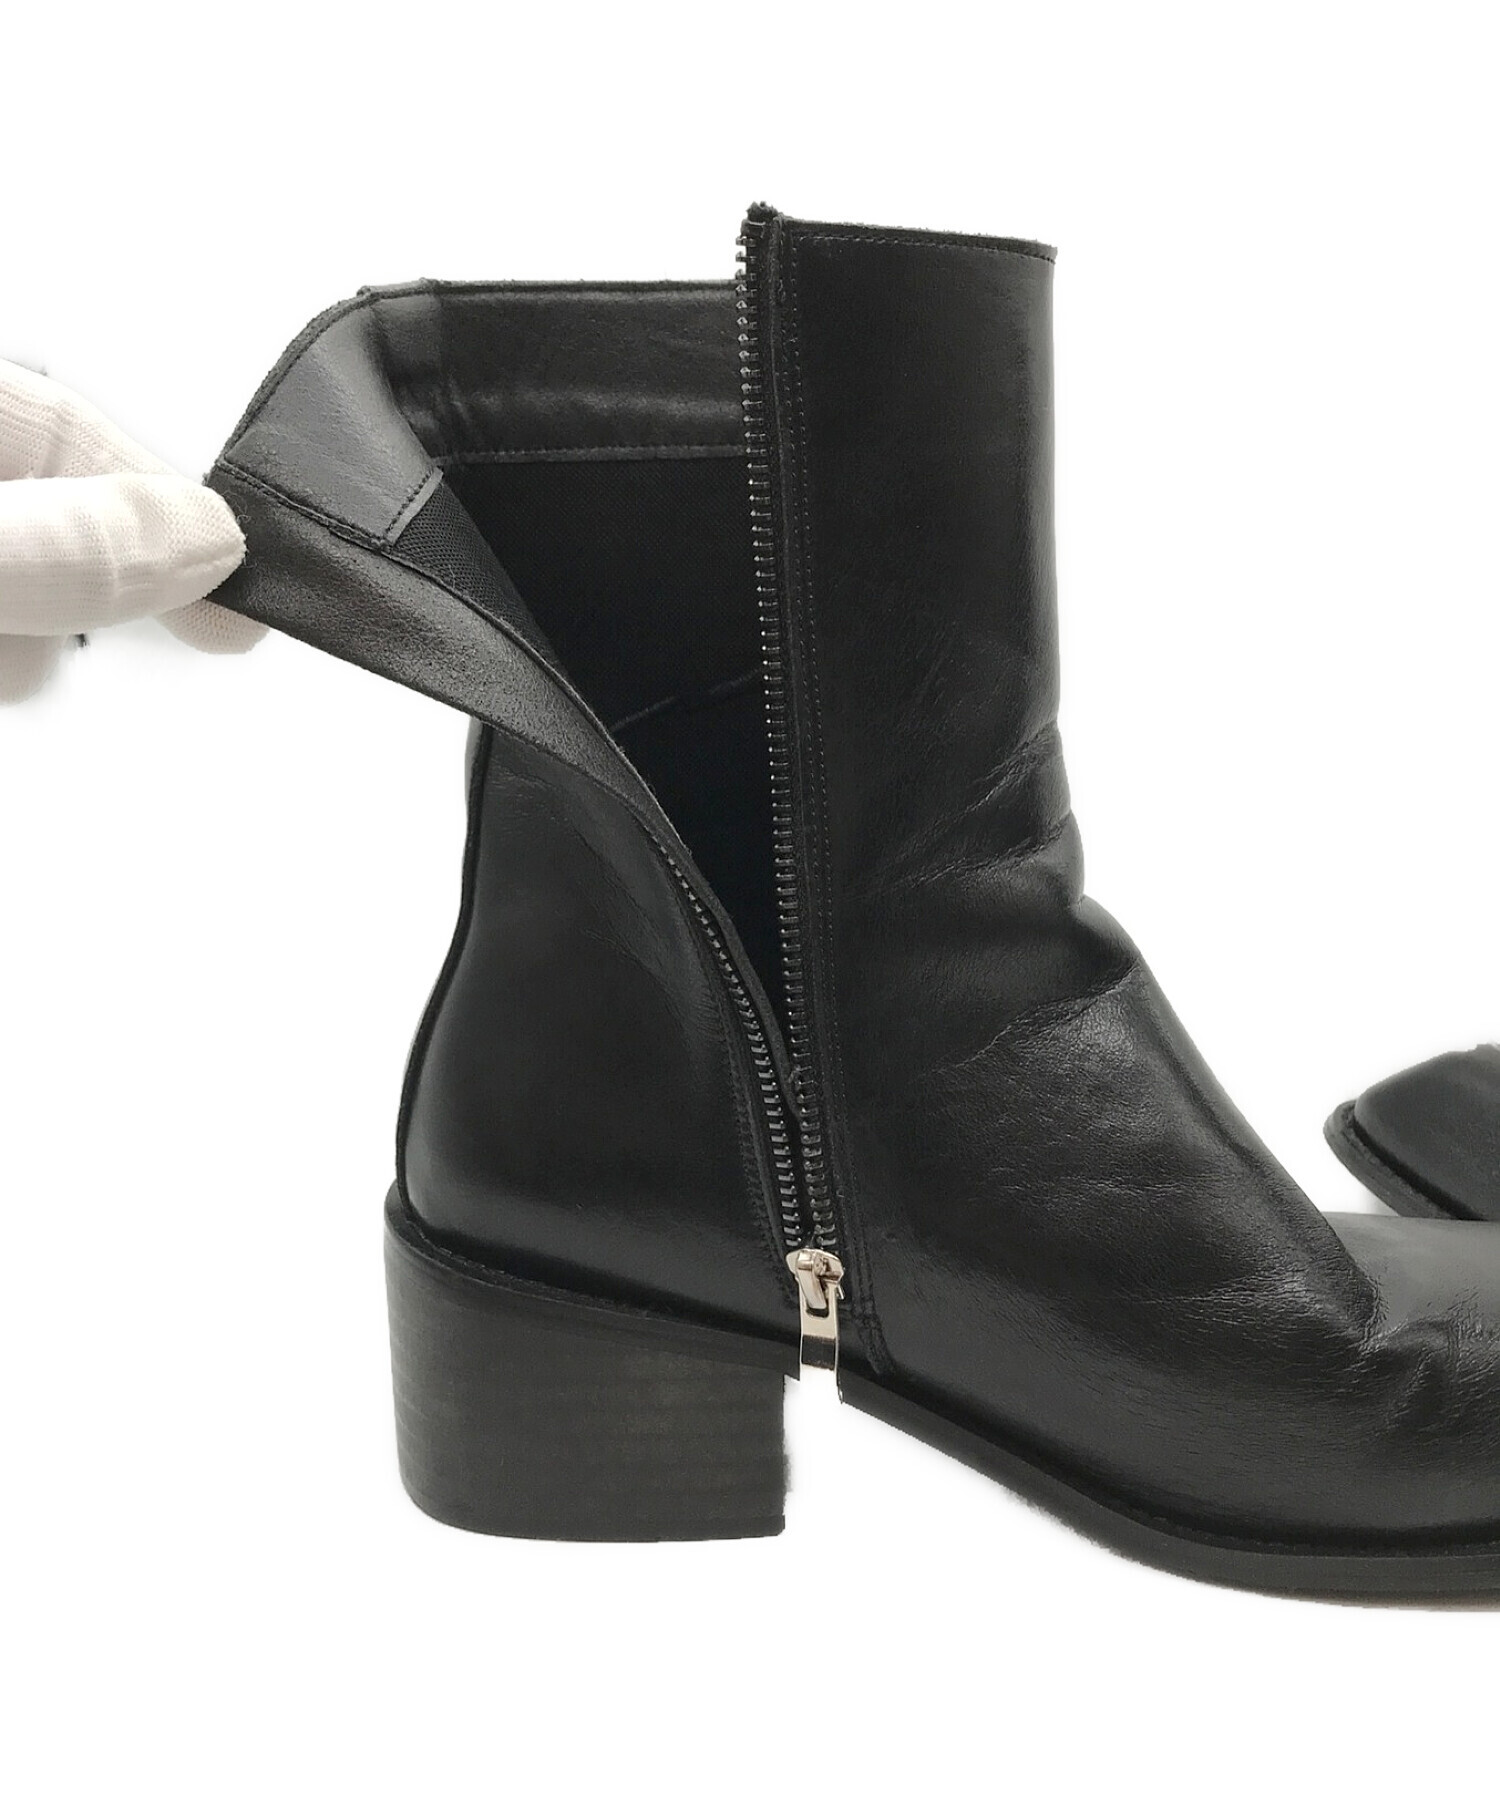 soerte (ソエルテ) Square toe leather boots スクエアトゥレザーブーツ ブラック サイズ:41